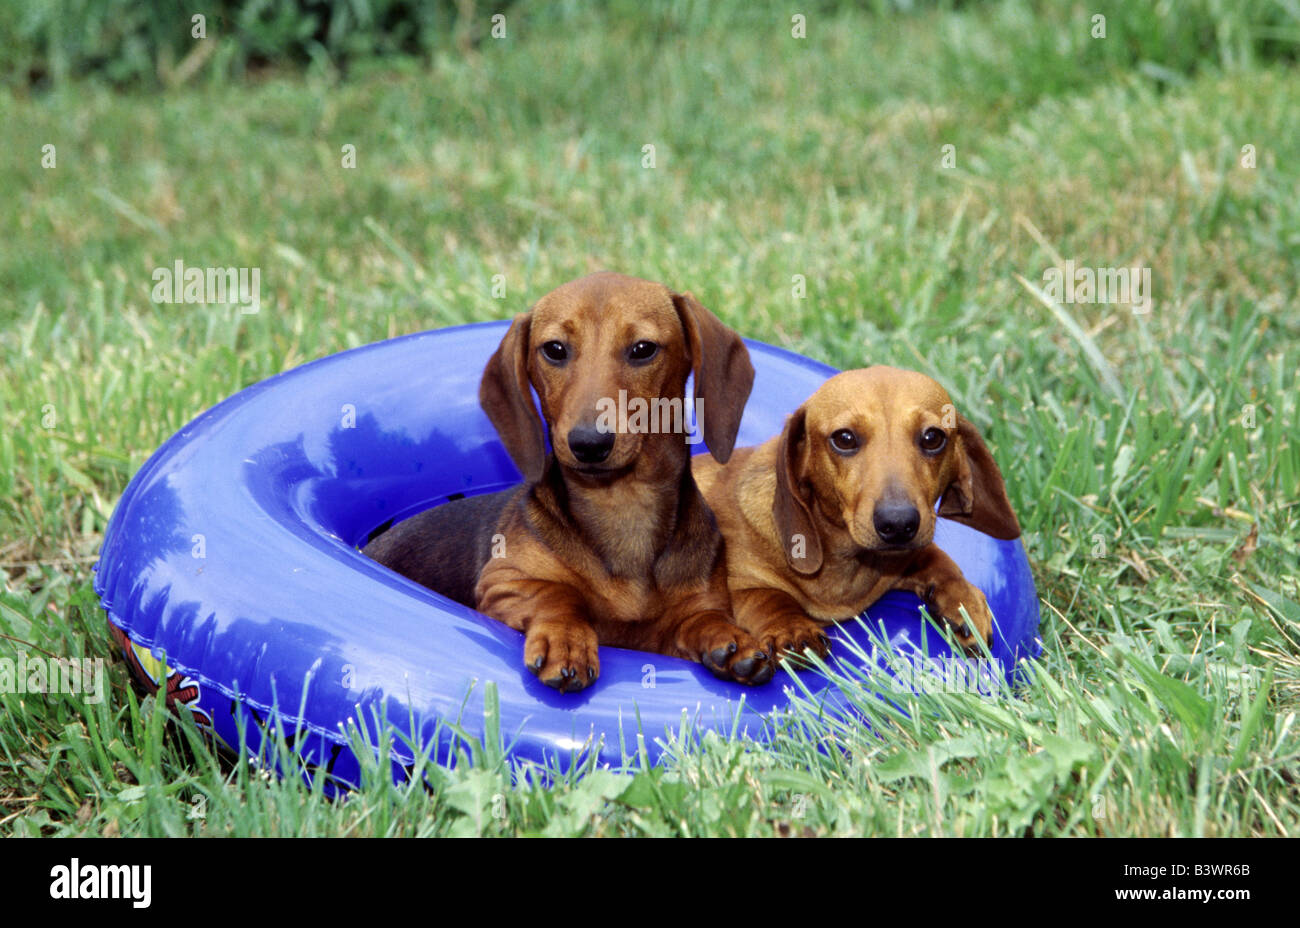 Zwei Dackel Hunde in einem aufblasbaren ring Stockfoto